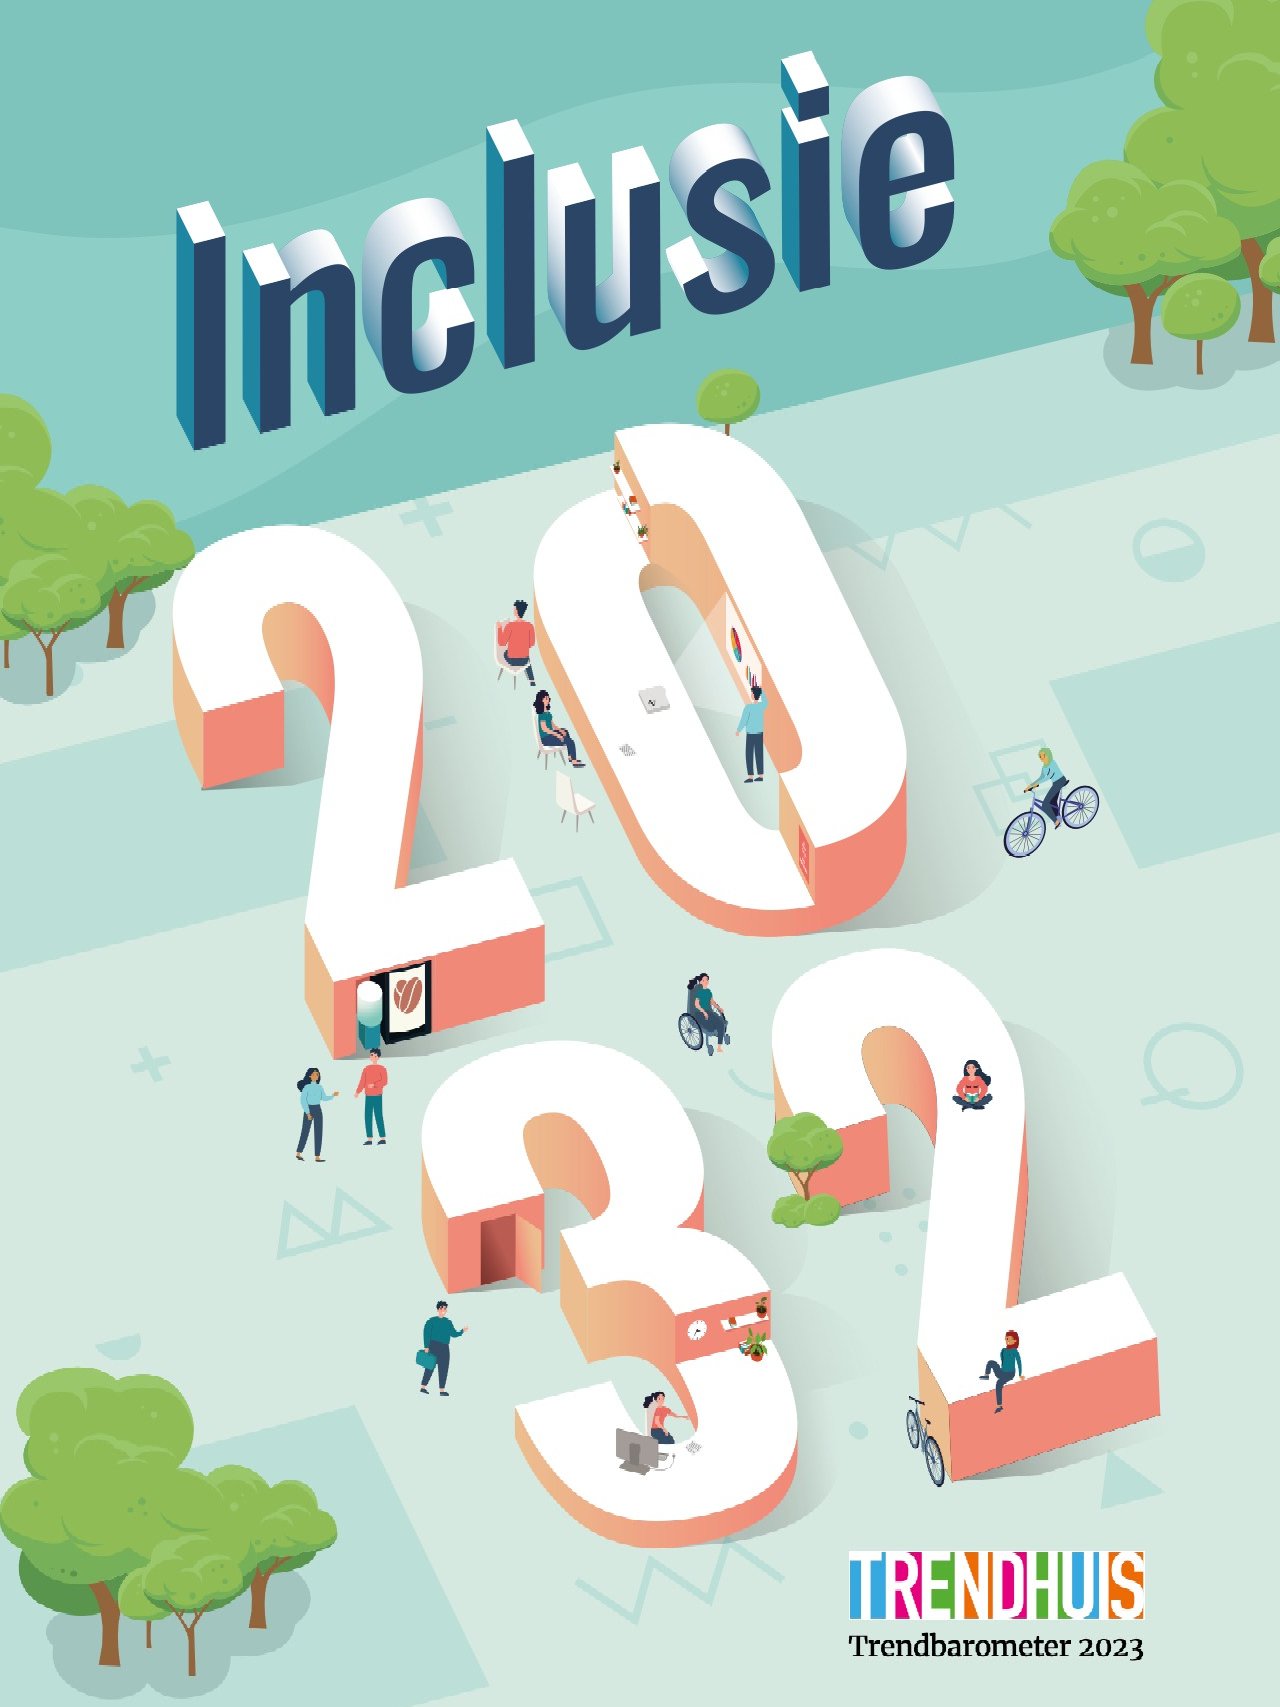 De inclusieve samenleving in 2032?